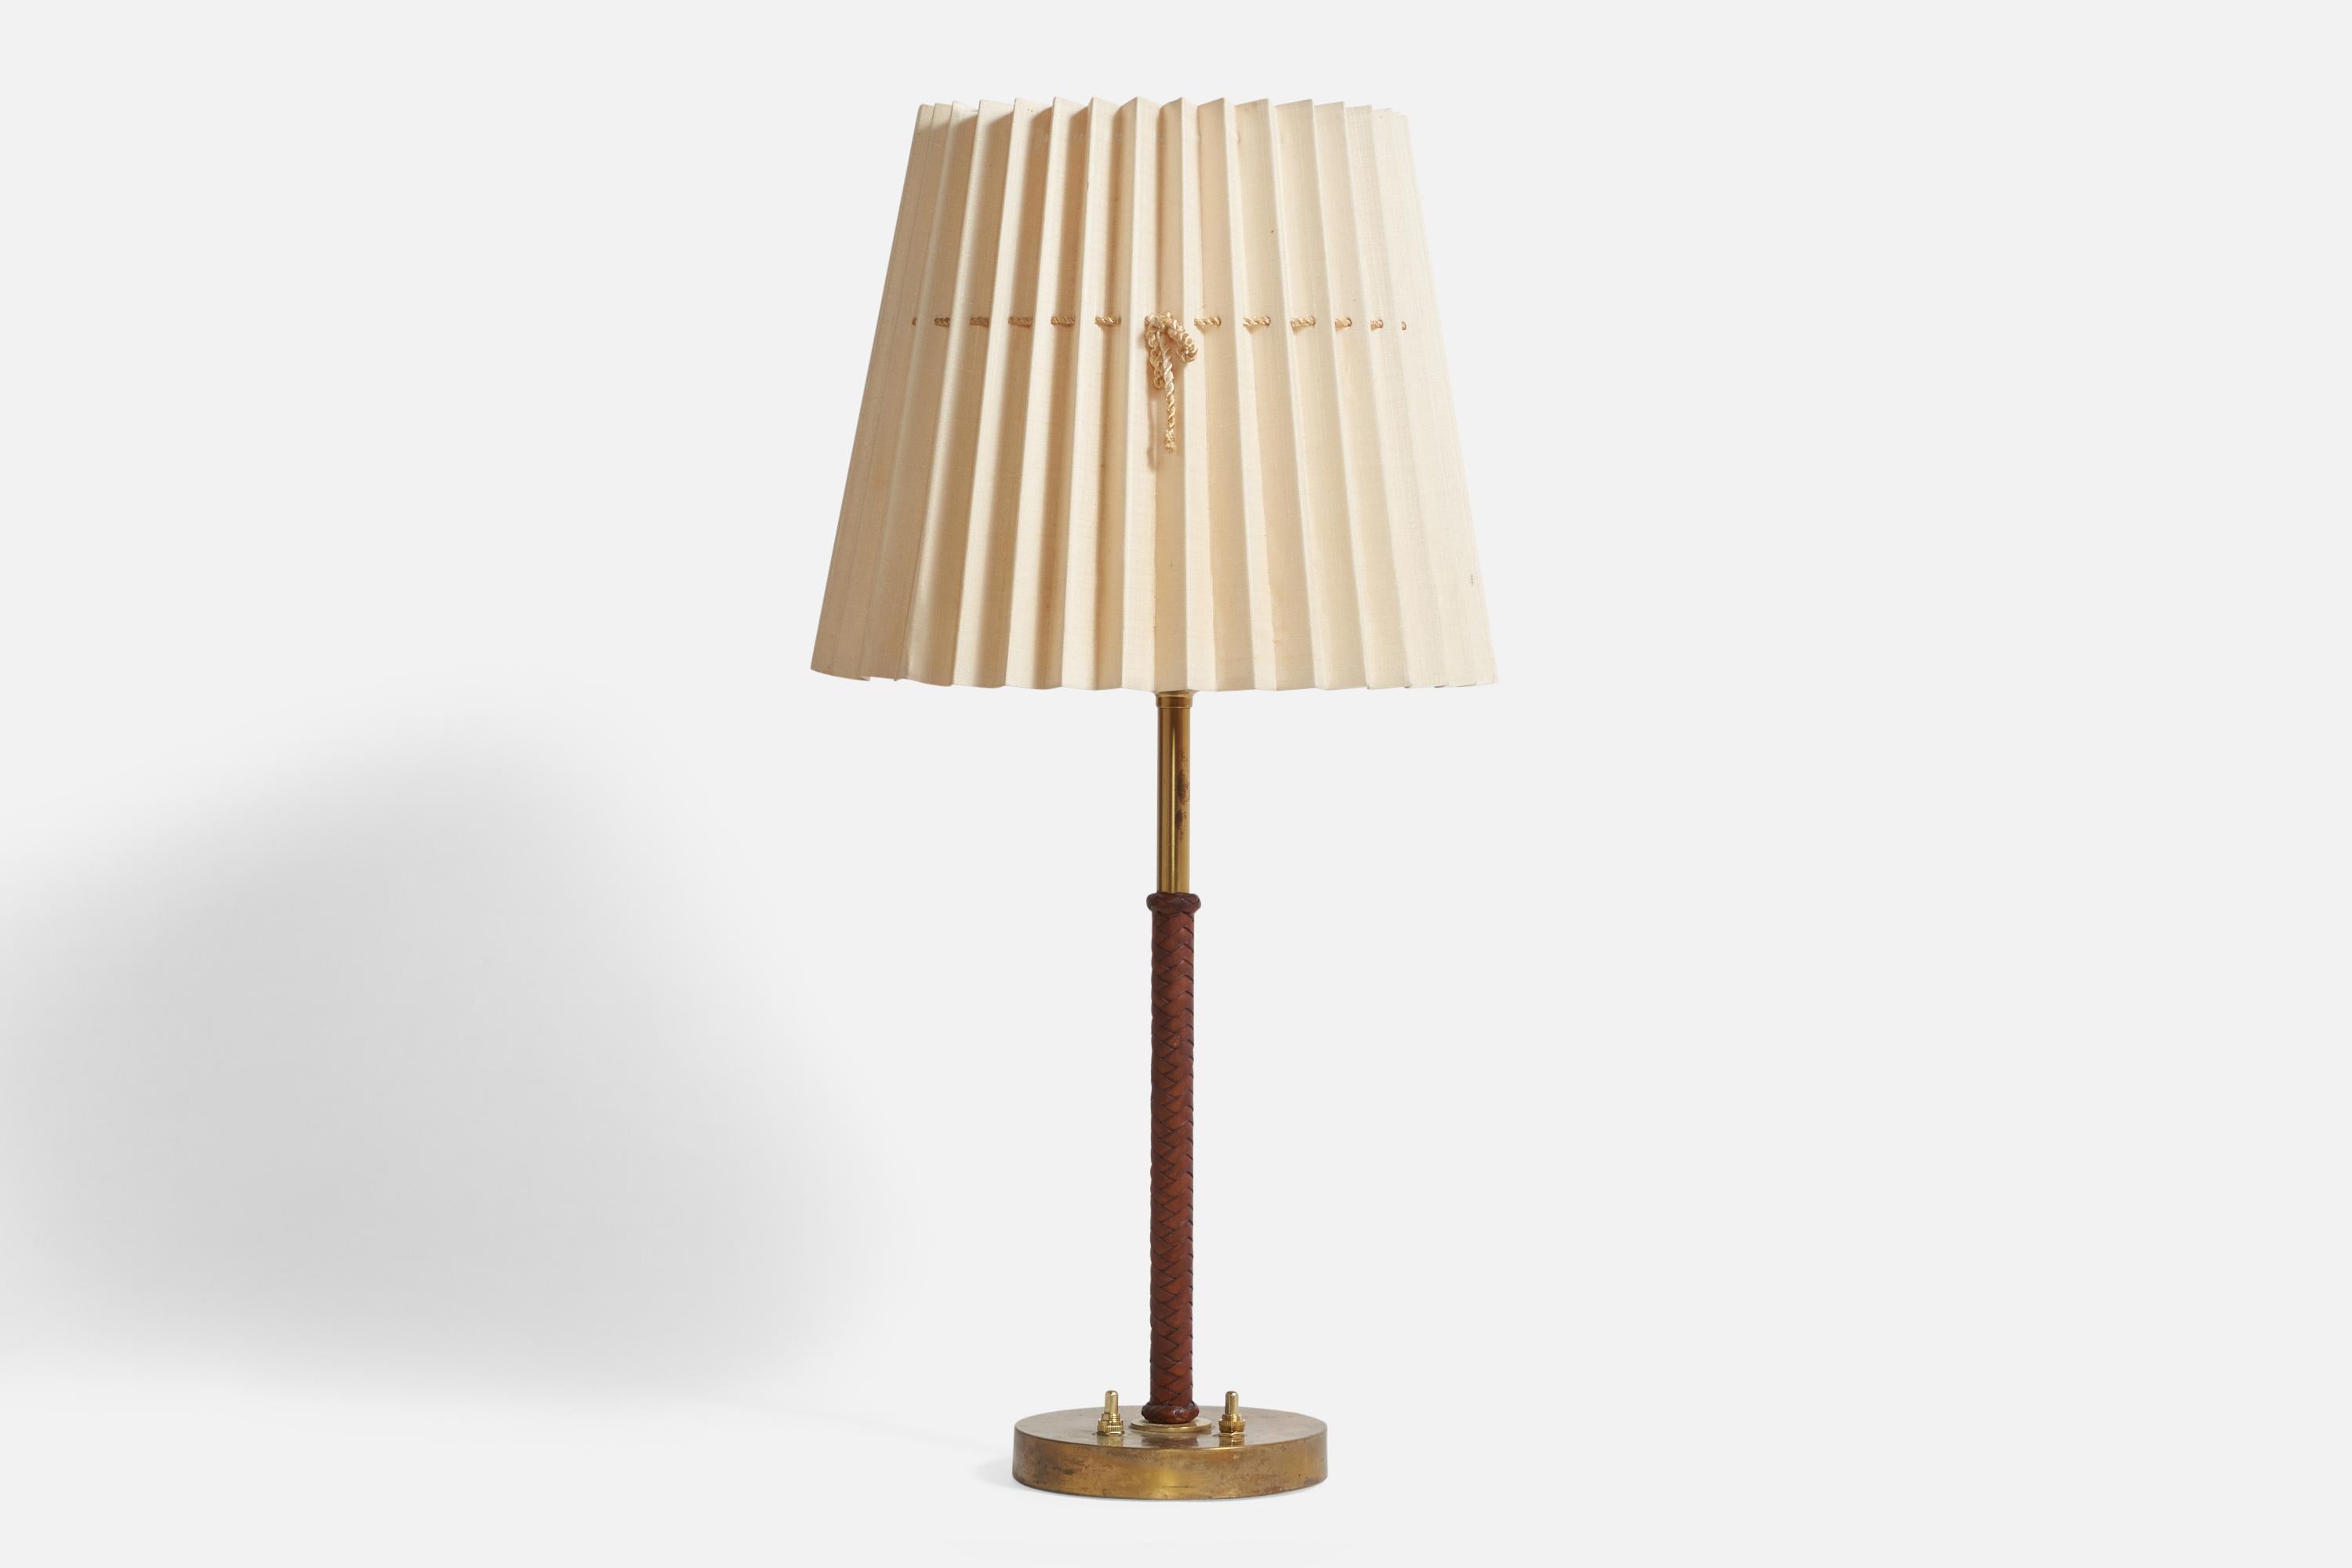 Eine Tischlampe aus Messing, geflochtenem braunem Leder und hellbeigem Papier, entworfen von Bertil Brisborg und hergestellt von Nordiska Kompaniet, Schweden, 1940er Jahre.

Gesamtabmessungen (Zoll): 25